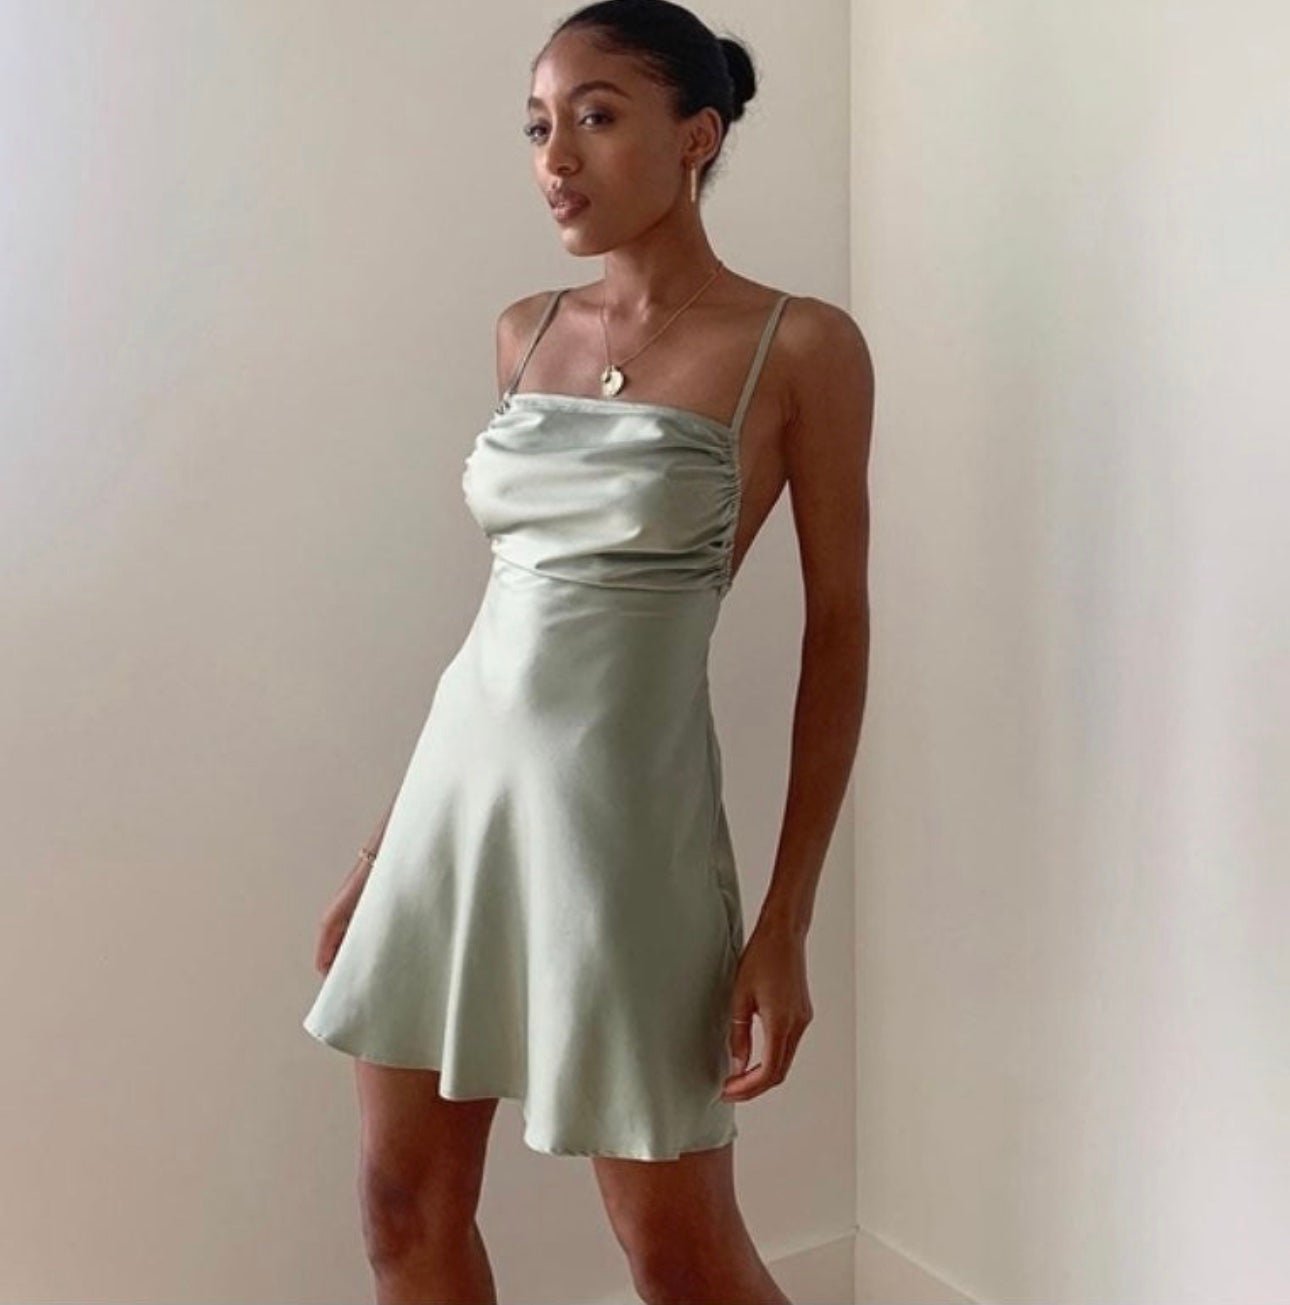 ✨BNWT Macy’s Danielle Bernstein Sage Green Satin Mini Dress in a Size 4. agjZnD44B